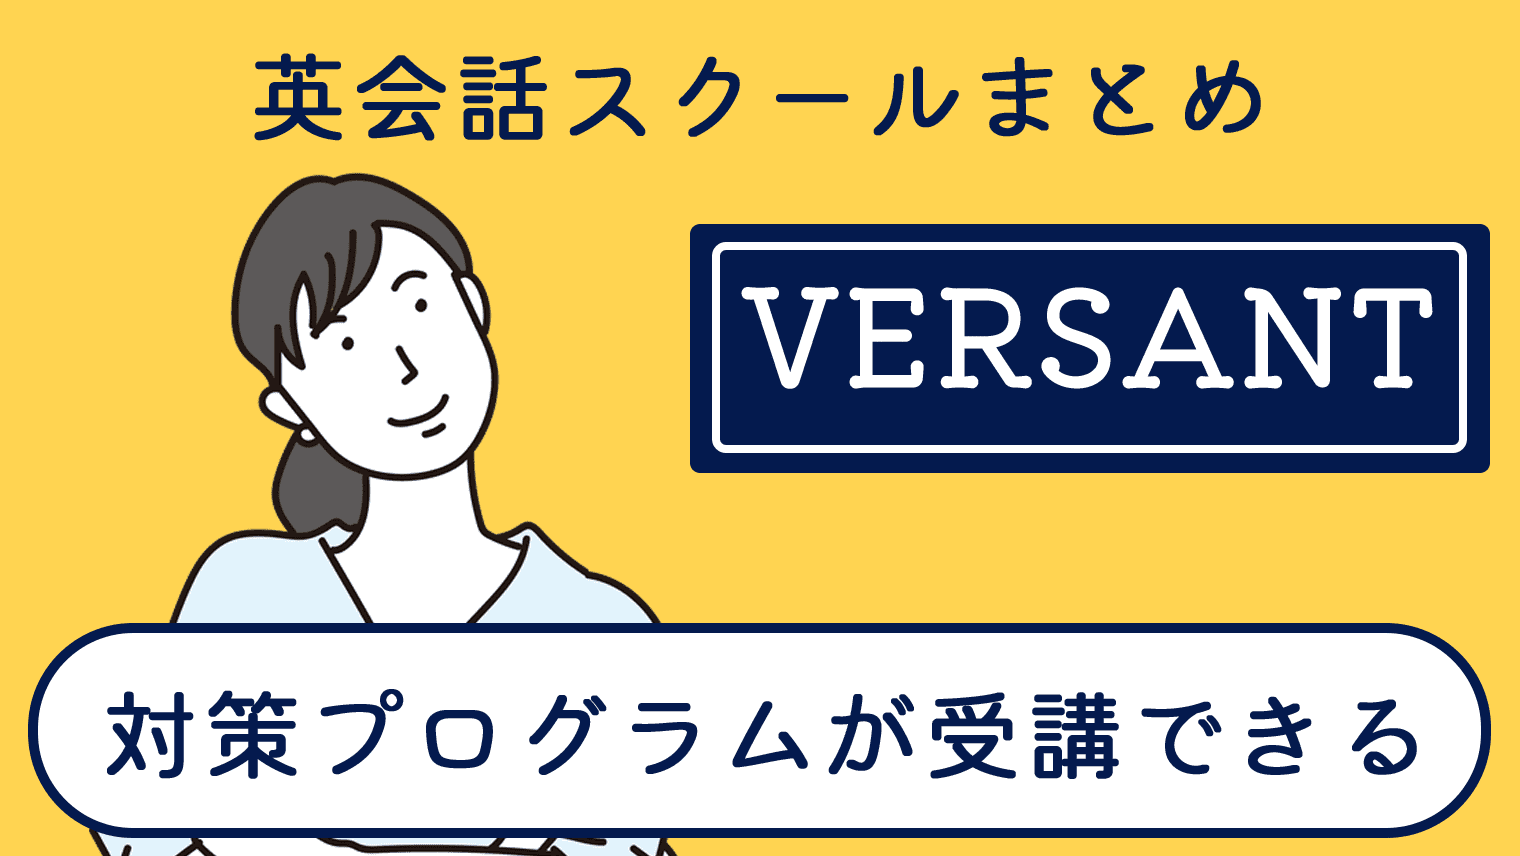 Versant対策のプログラムが受講できる英会話スクール【5選